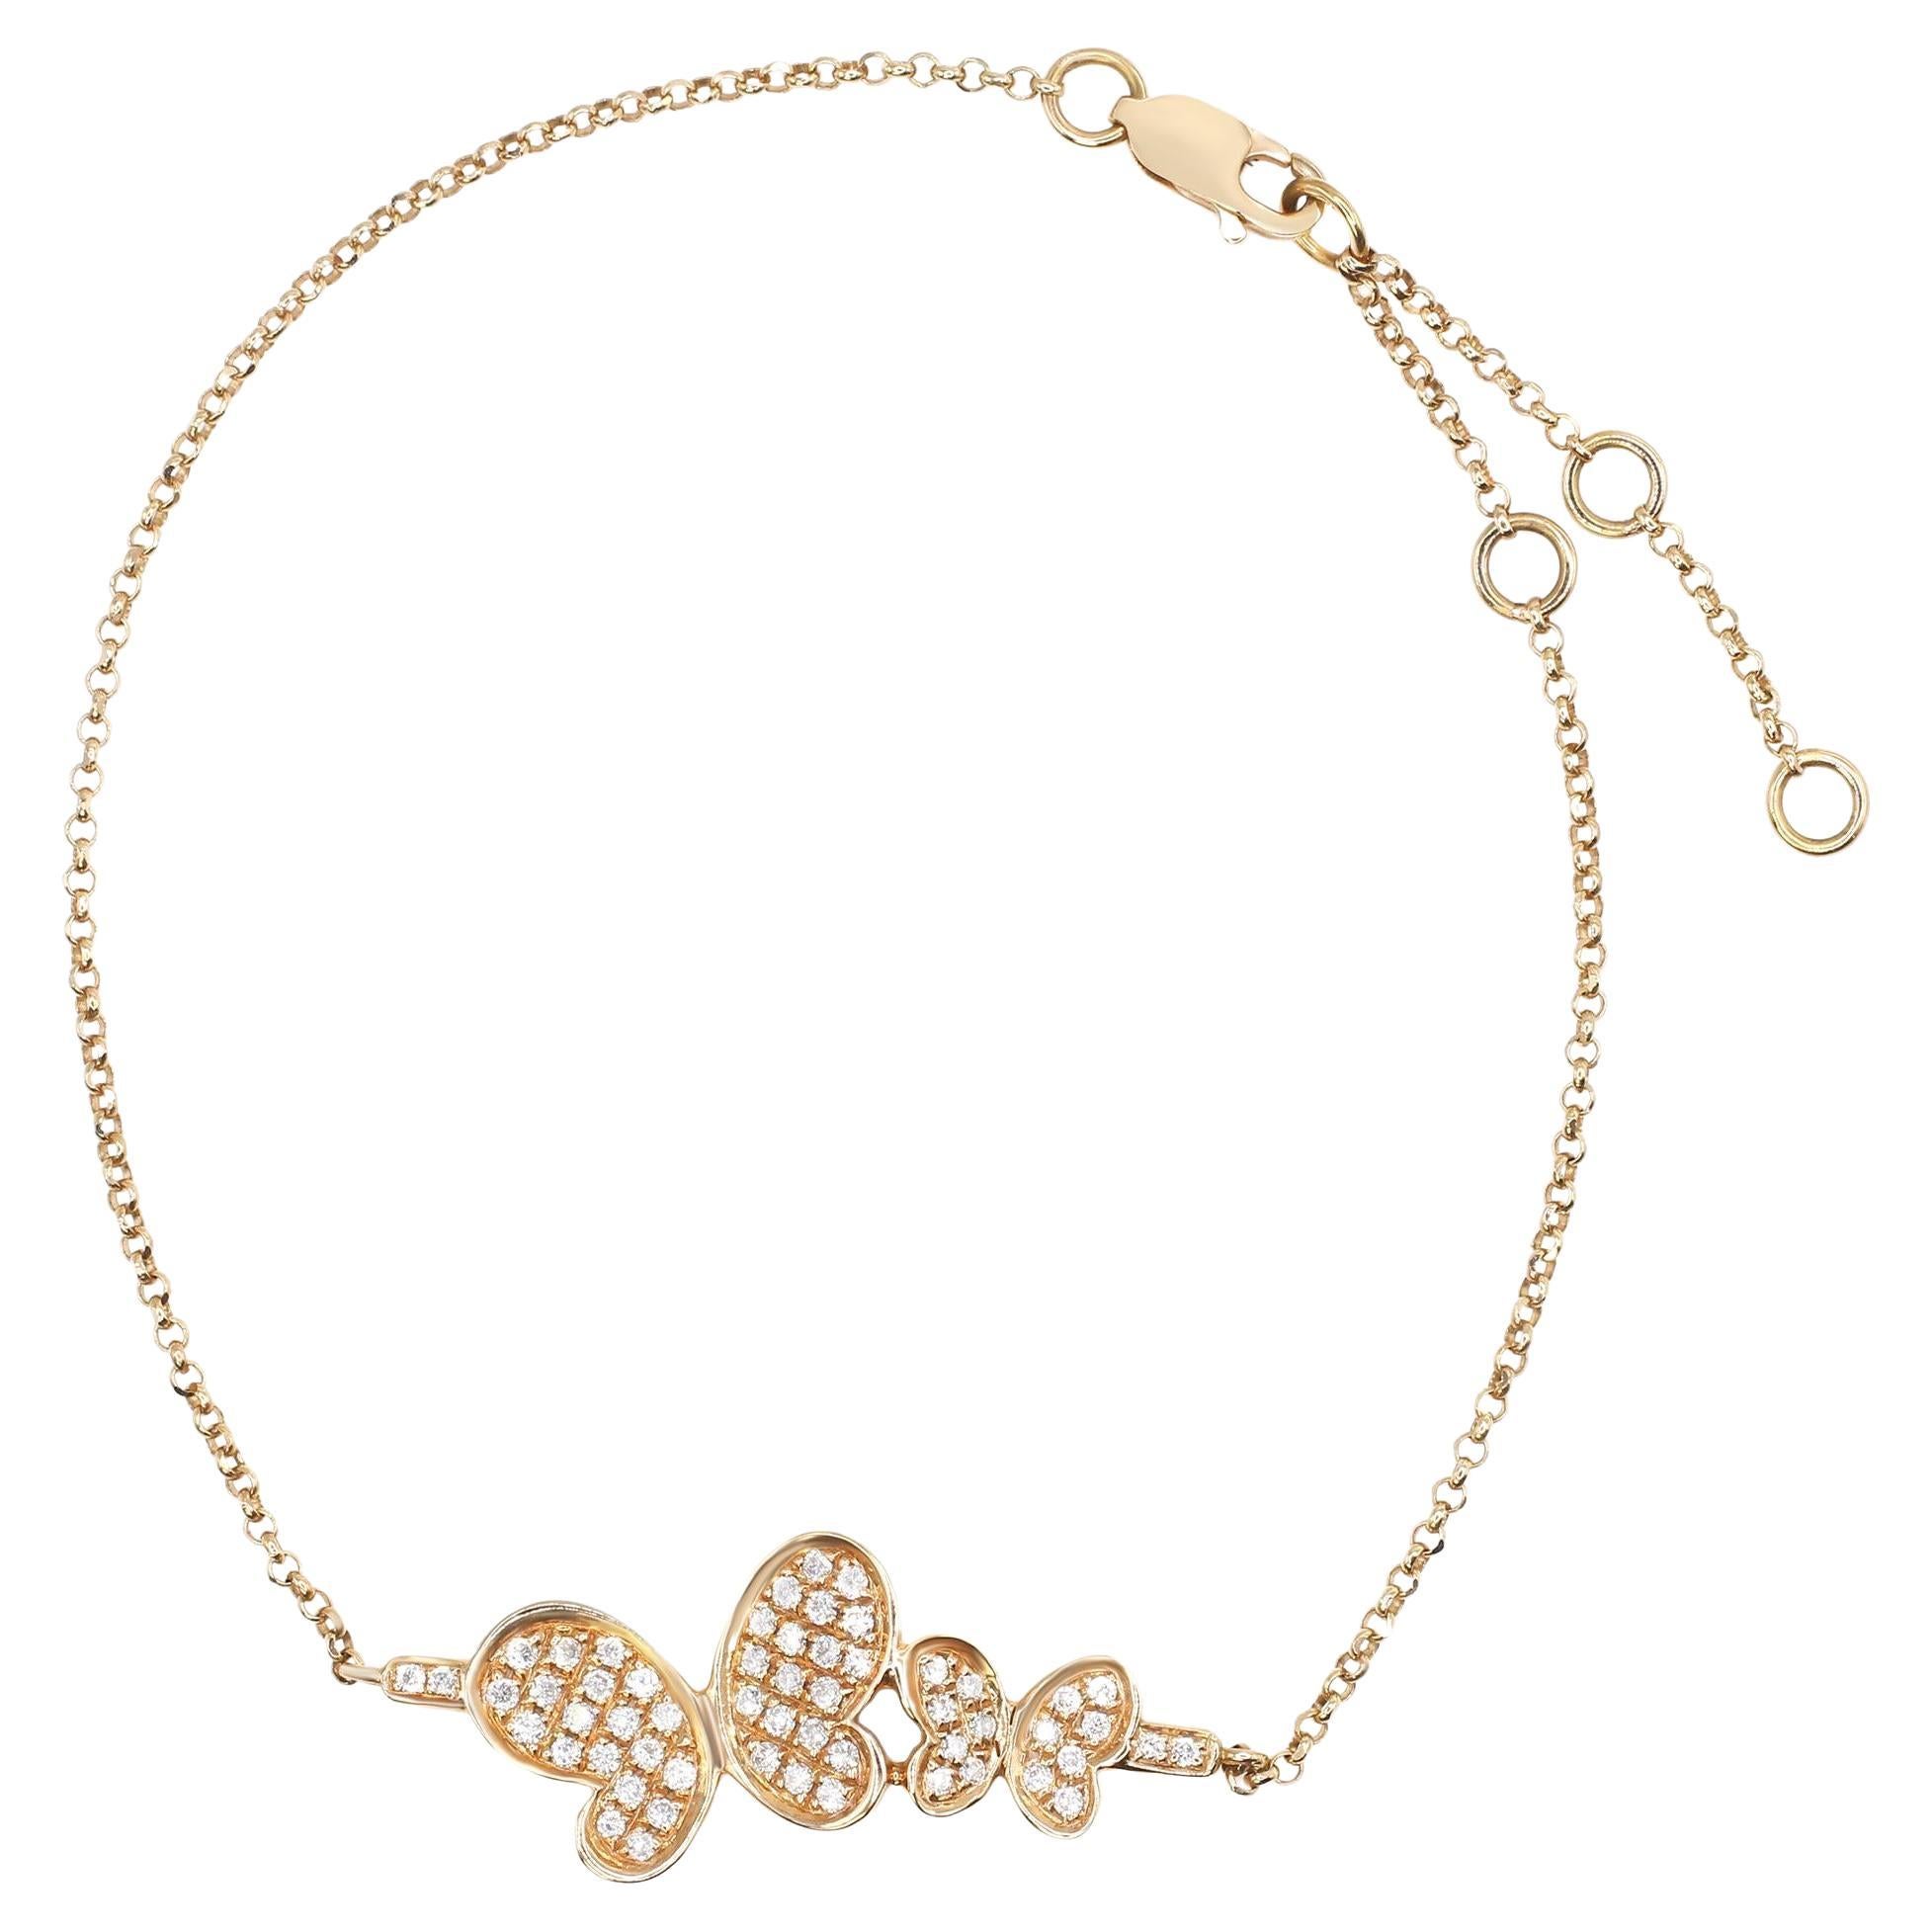 Rachel Koen Simple Diamond Butterfly Chain Bracelet 18k Rose Gold 0.36cttw